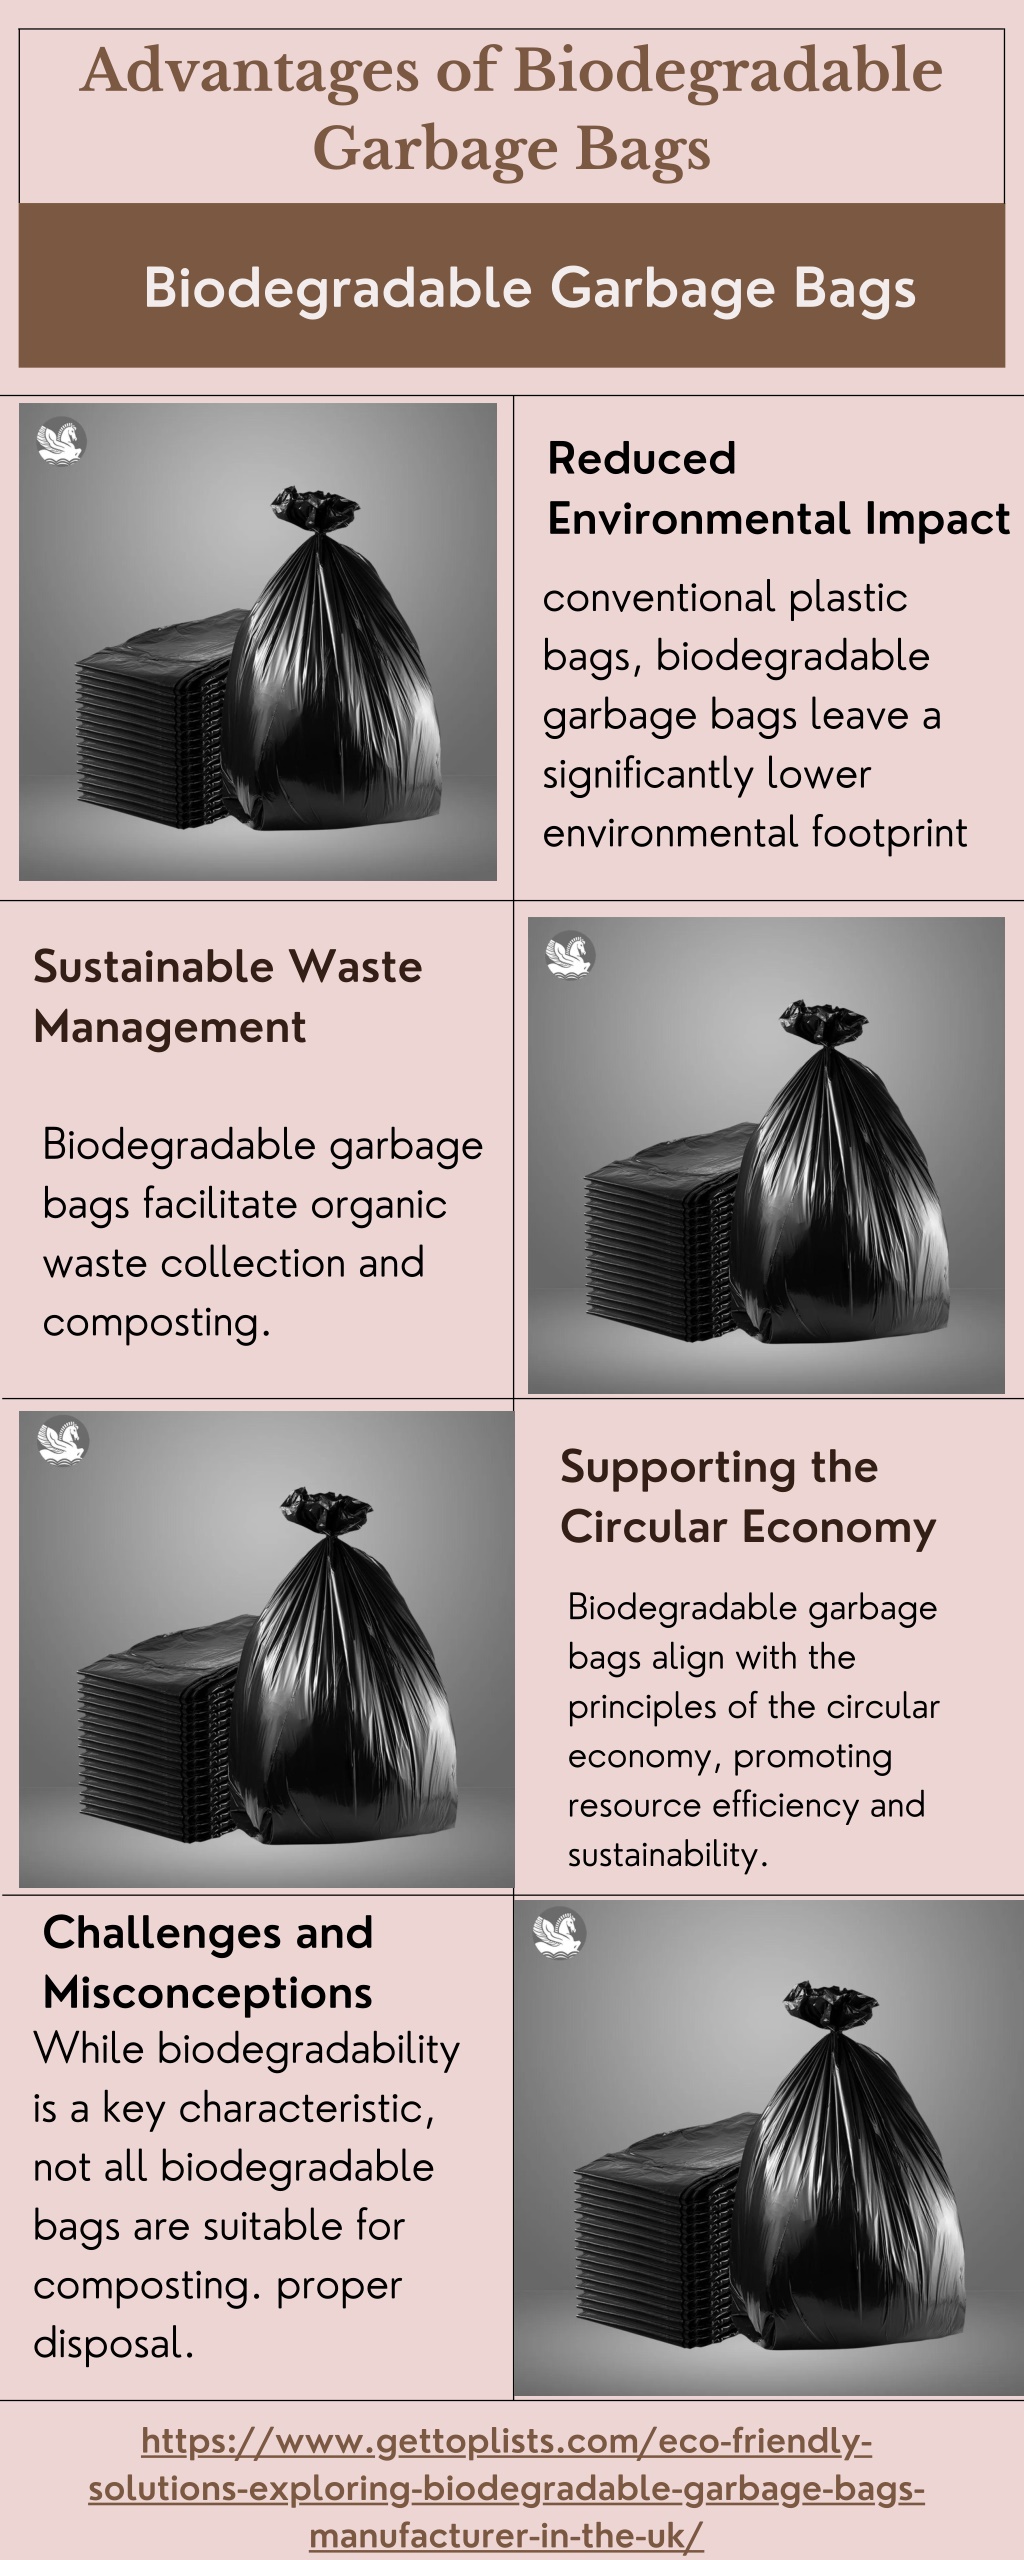 https://image7.slideserve.com/12358172/advantages-of-biodegradable-garbage-bags-l.jpg